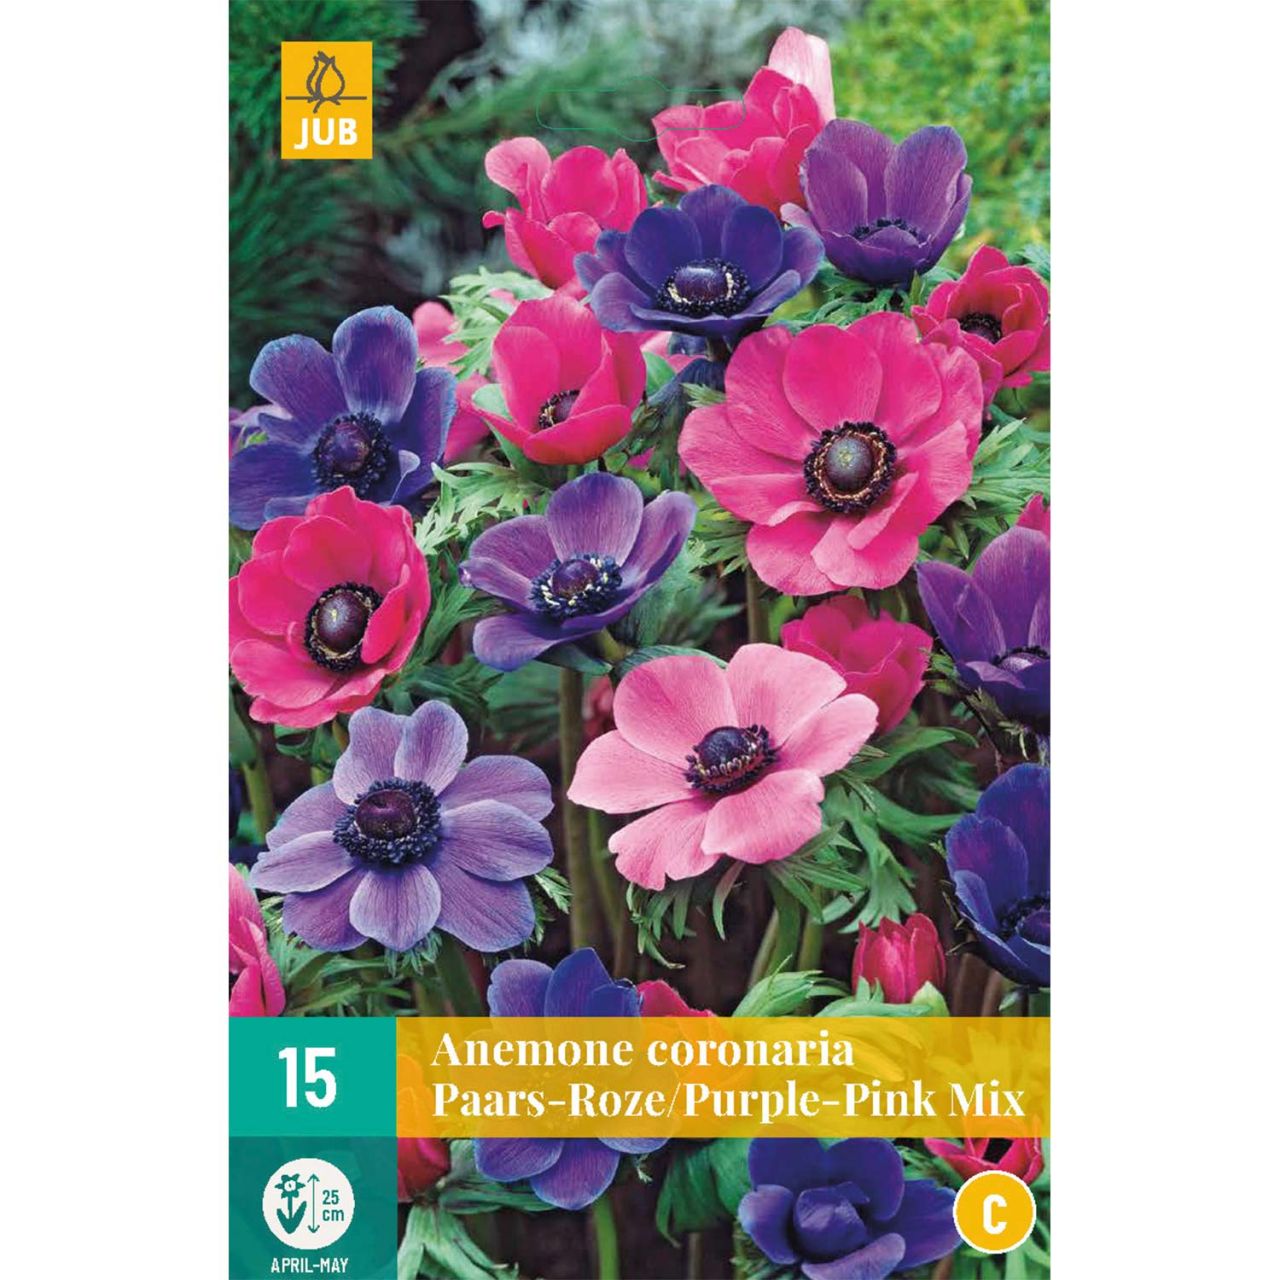 Kategorie <b>Frühlings-Blumenzwiebeln </b> - Garten-Anemonen Mischung 'Purpur-Rosa' - 15 Stück - Anemone coronaria